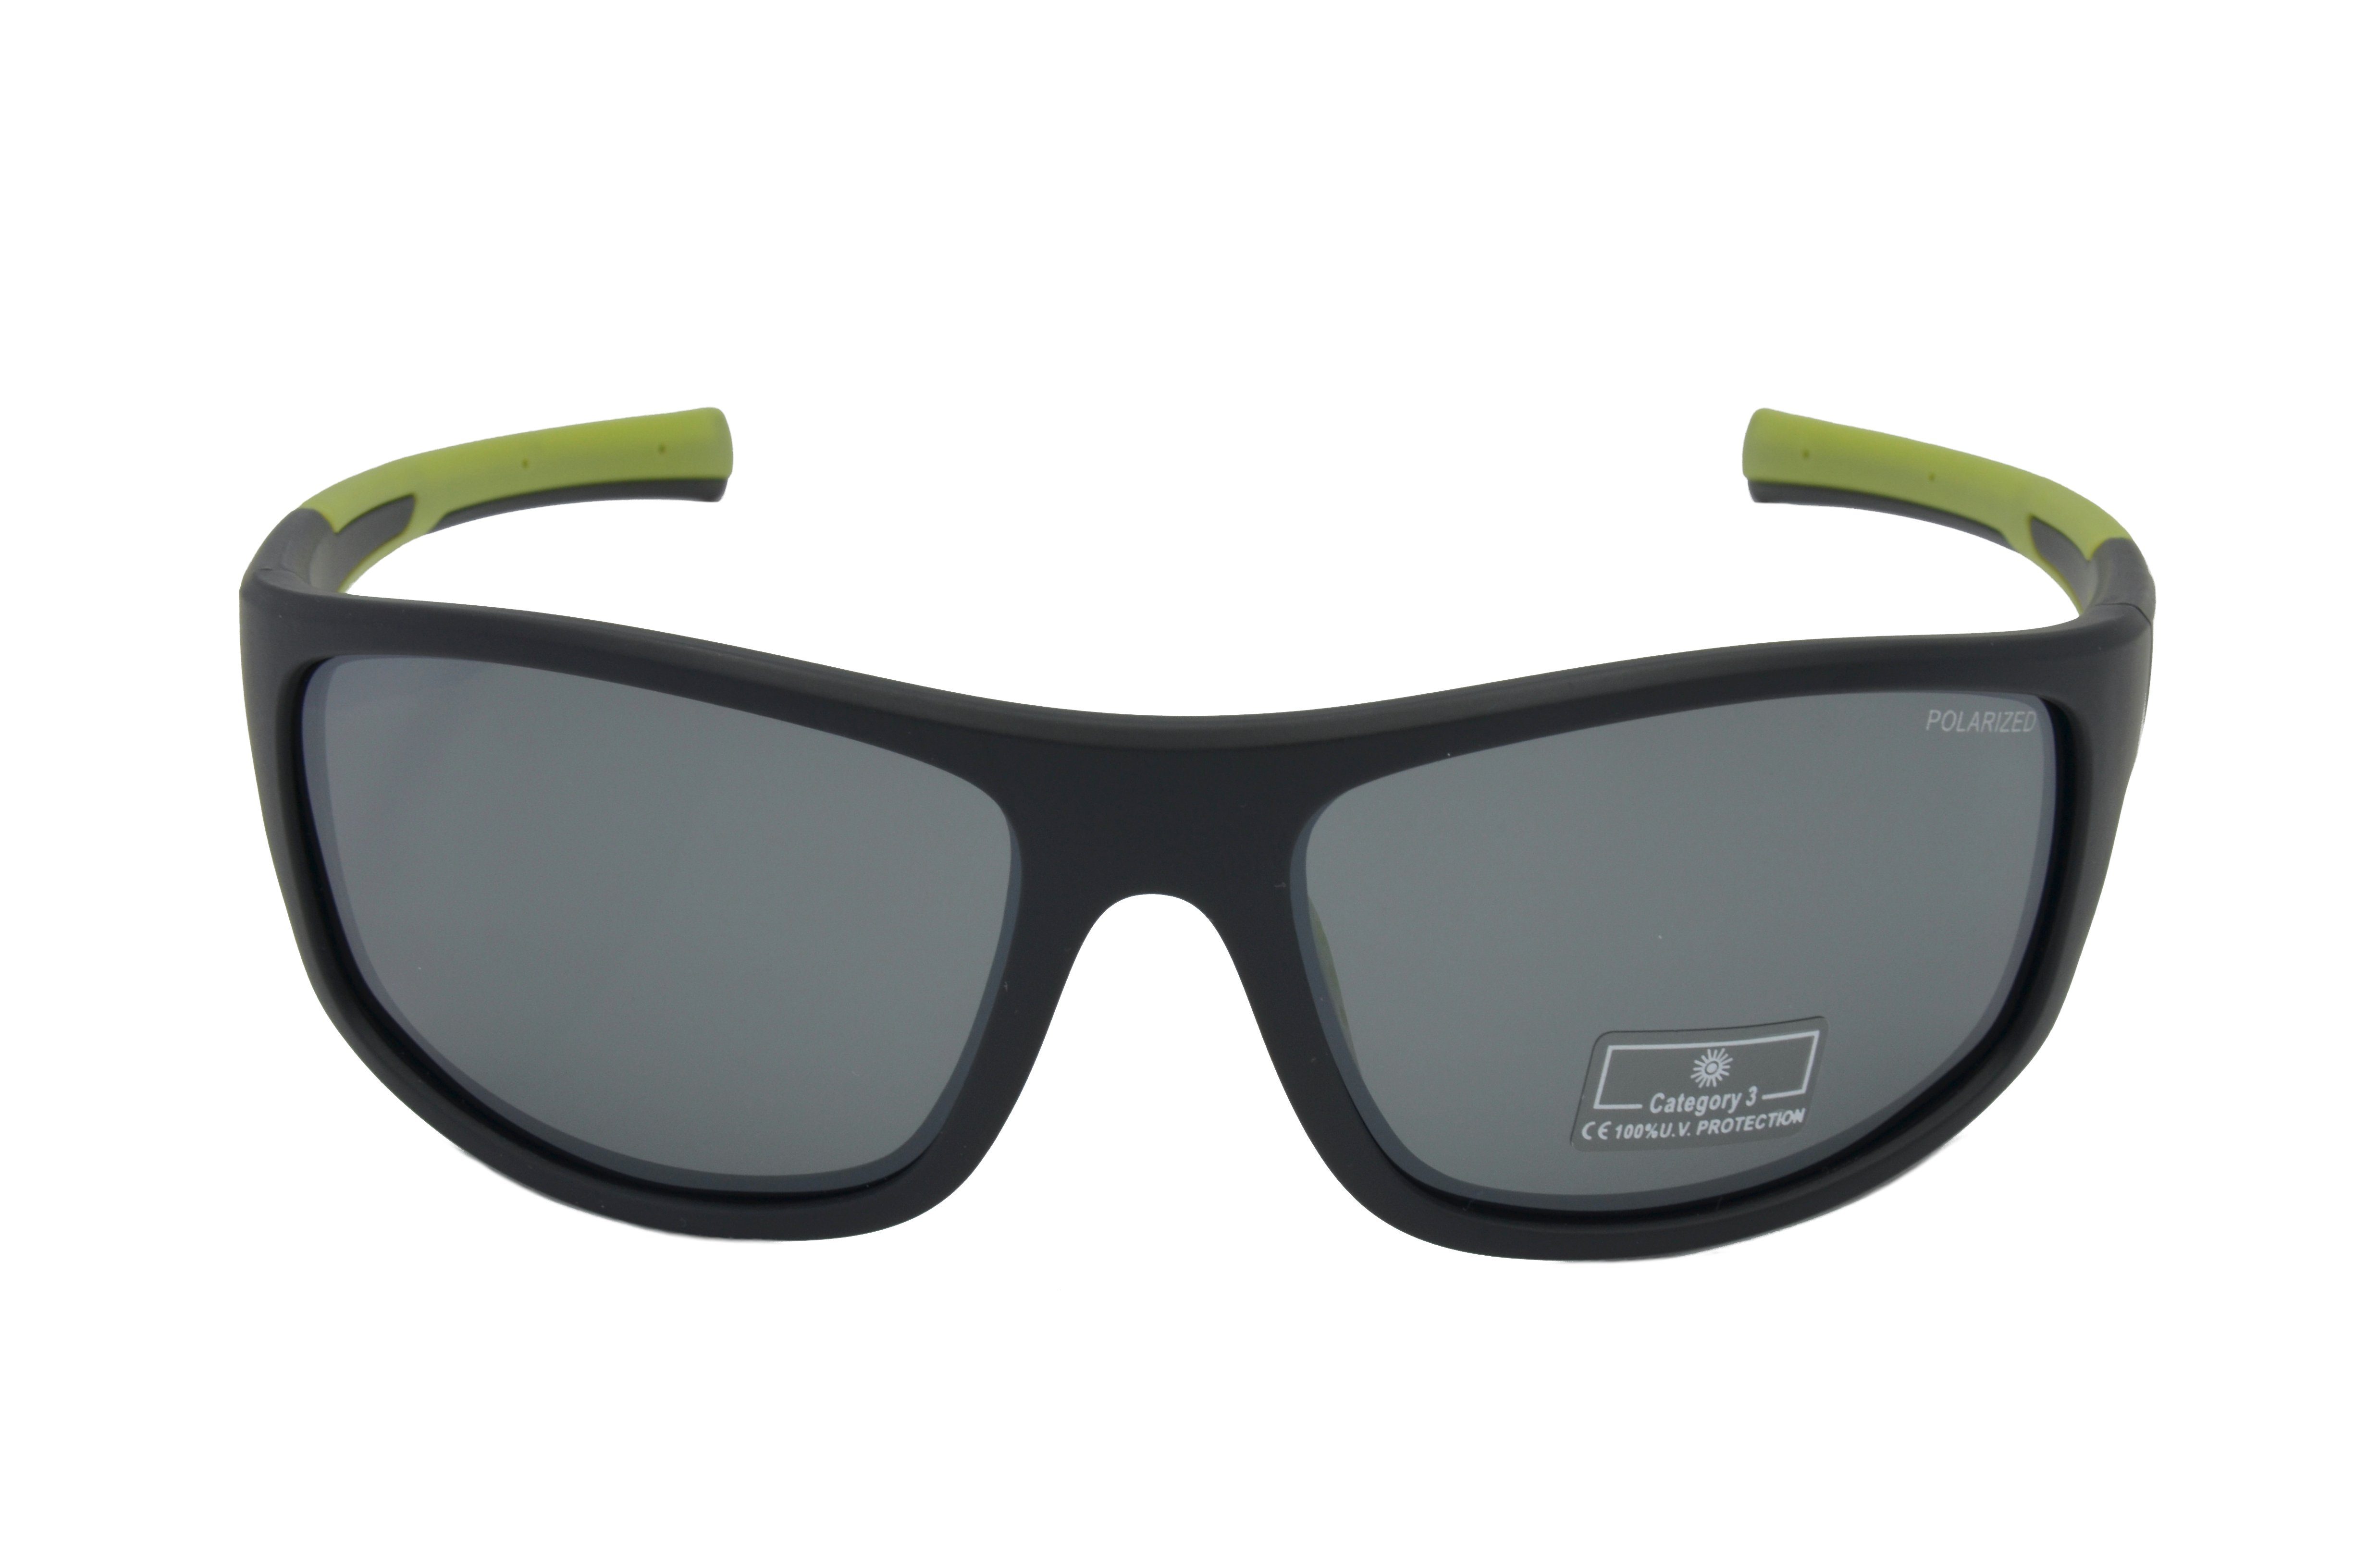 Gamswild Sportbrille TR90 -orange, / Unisex, -grün polarisiert, Herren schwarz-rot, blau, Skibrille schwarz-grün Sonnenbrille Damen WS2238 grau, Fahrradbrille